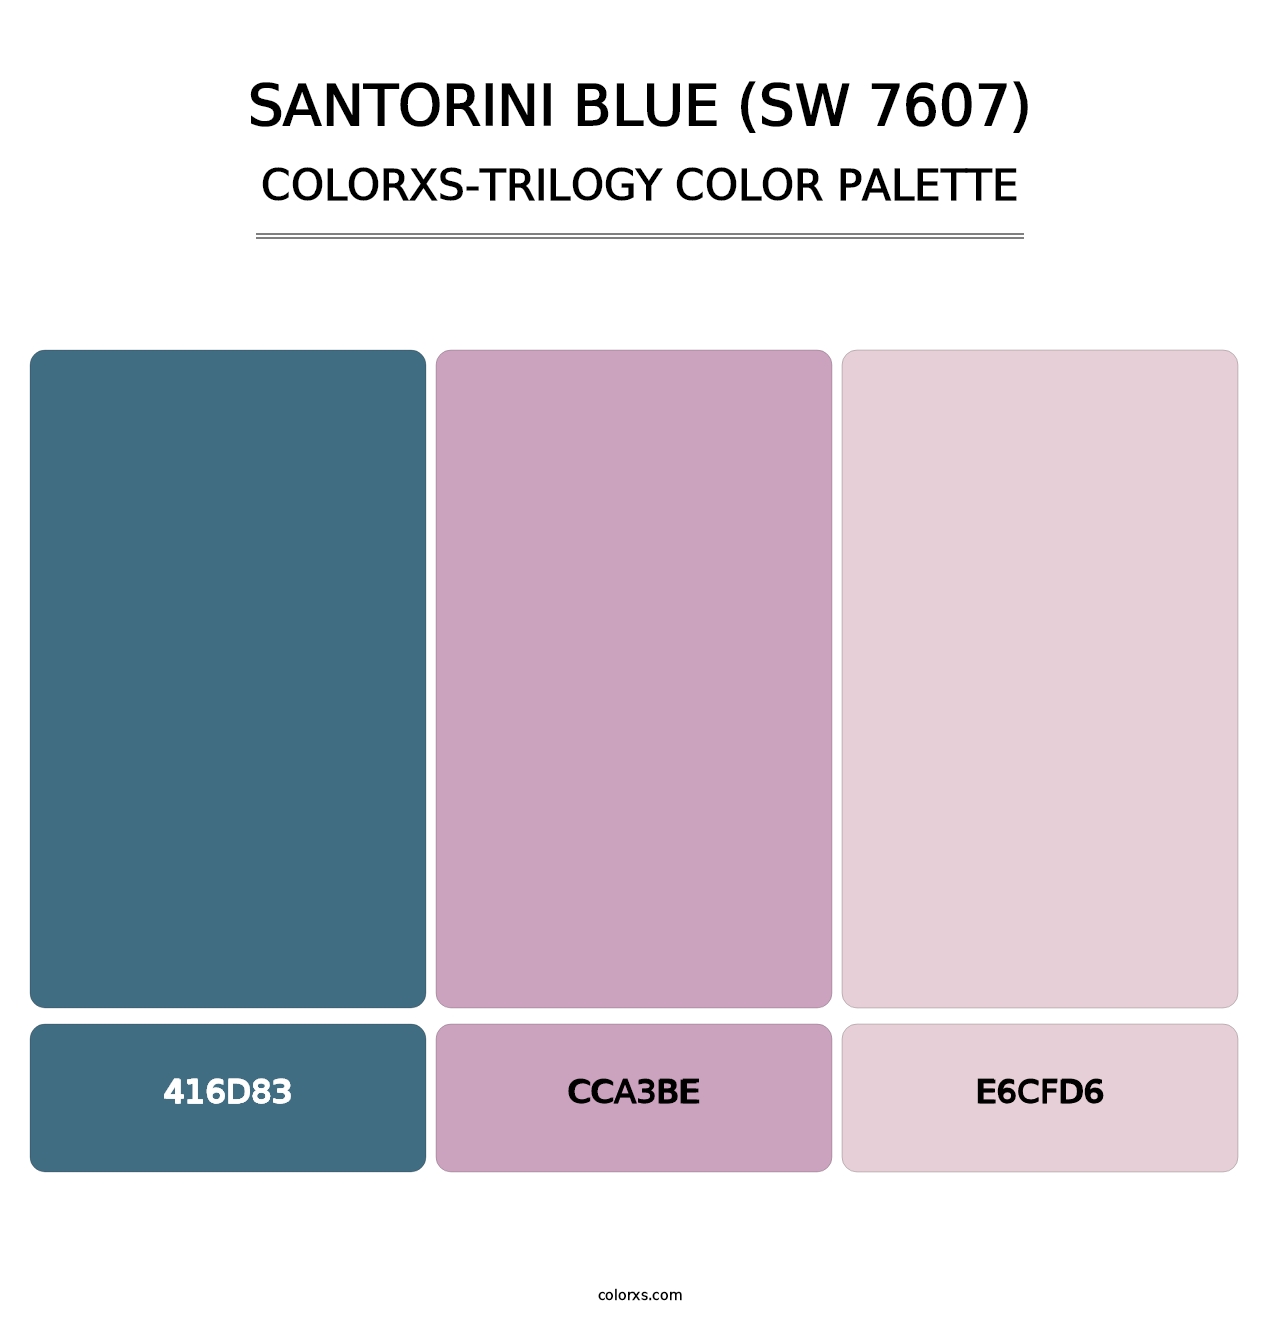 Santorini Blue (SW 7607) - Colorxs Trilogy Palette